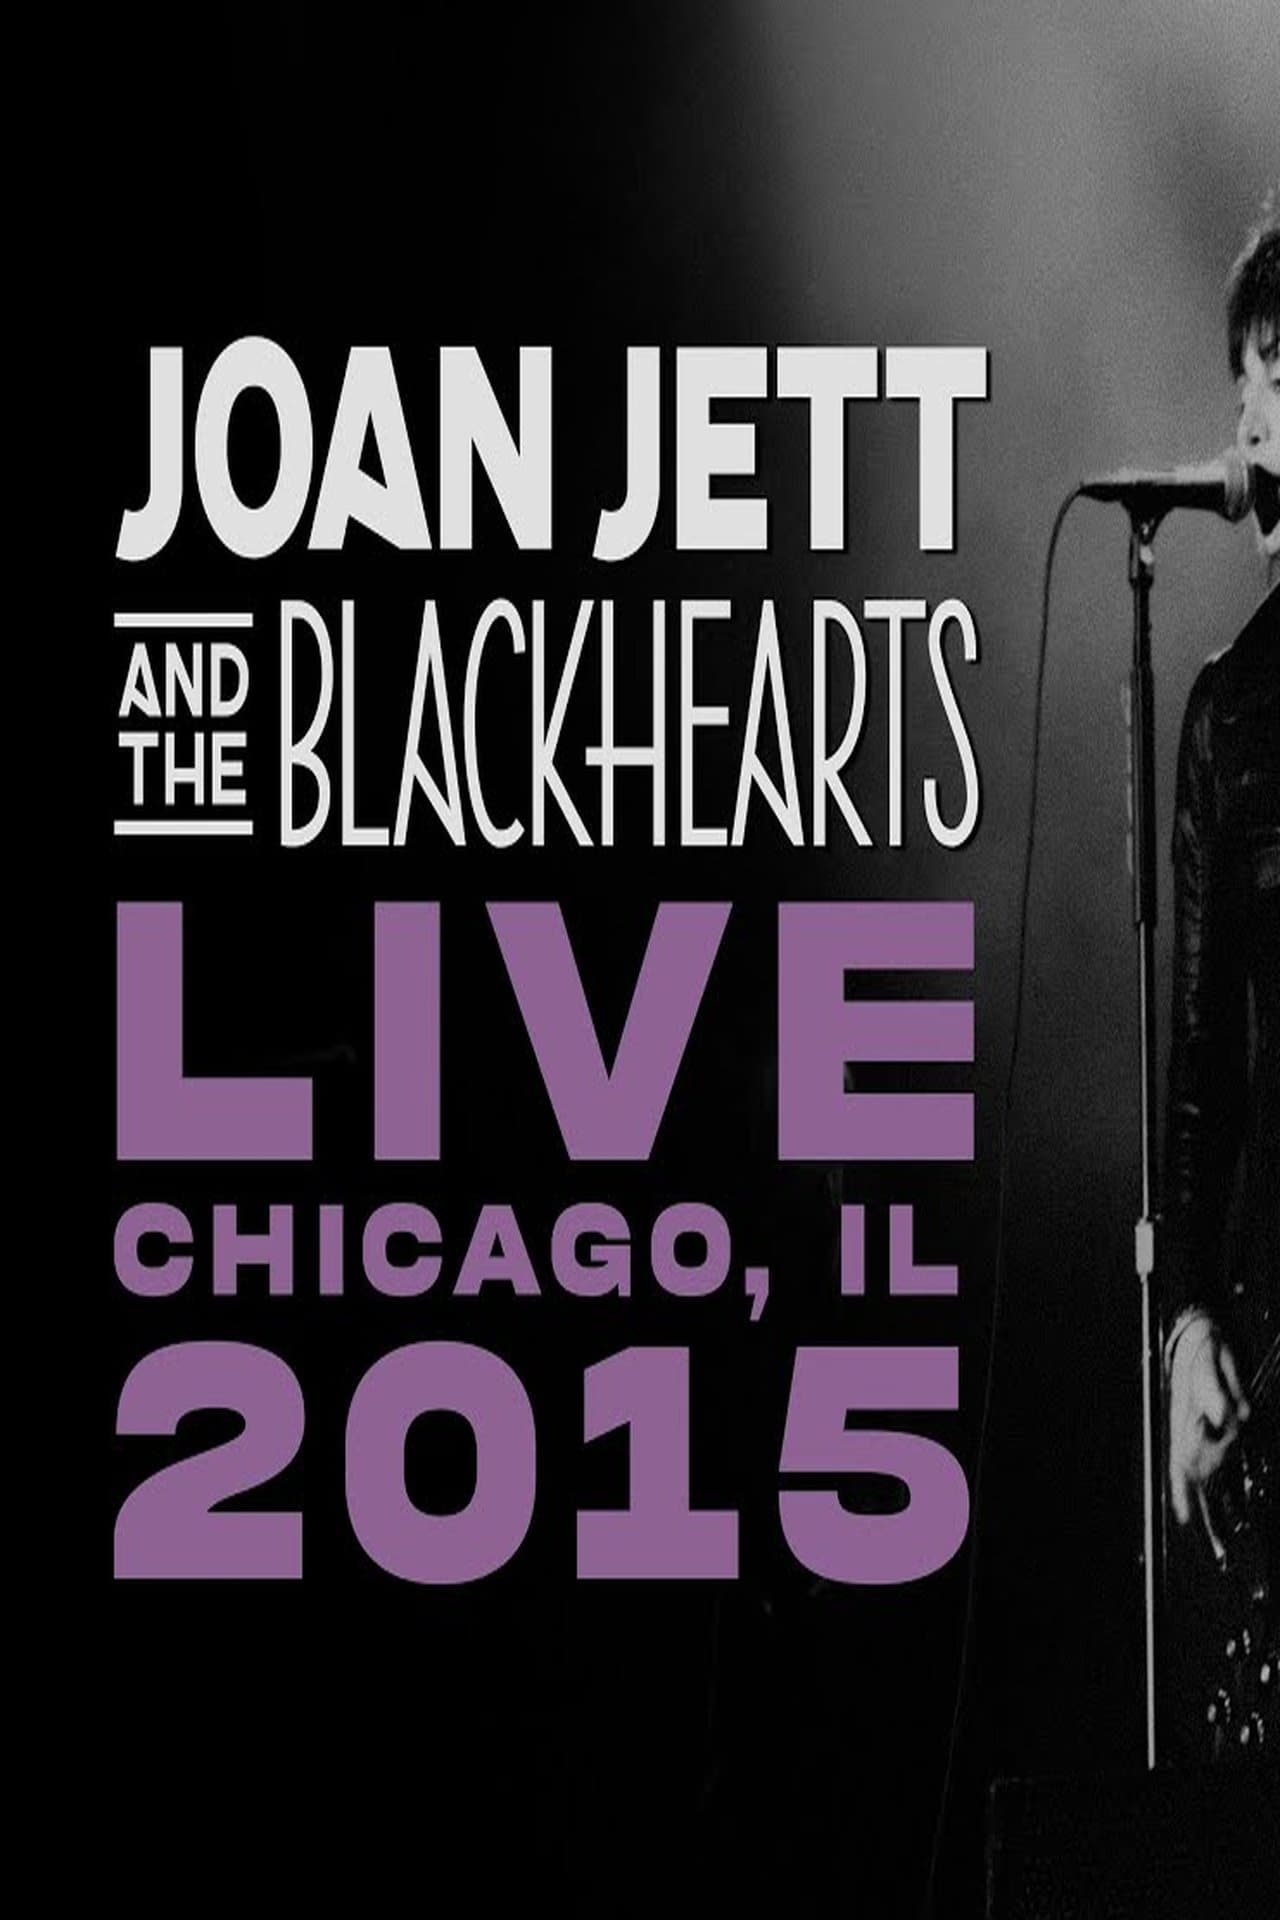 Joan Jett & The Blackhearts LIVE - Chicago, IL 2015